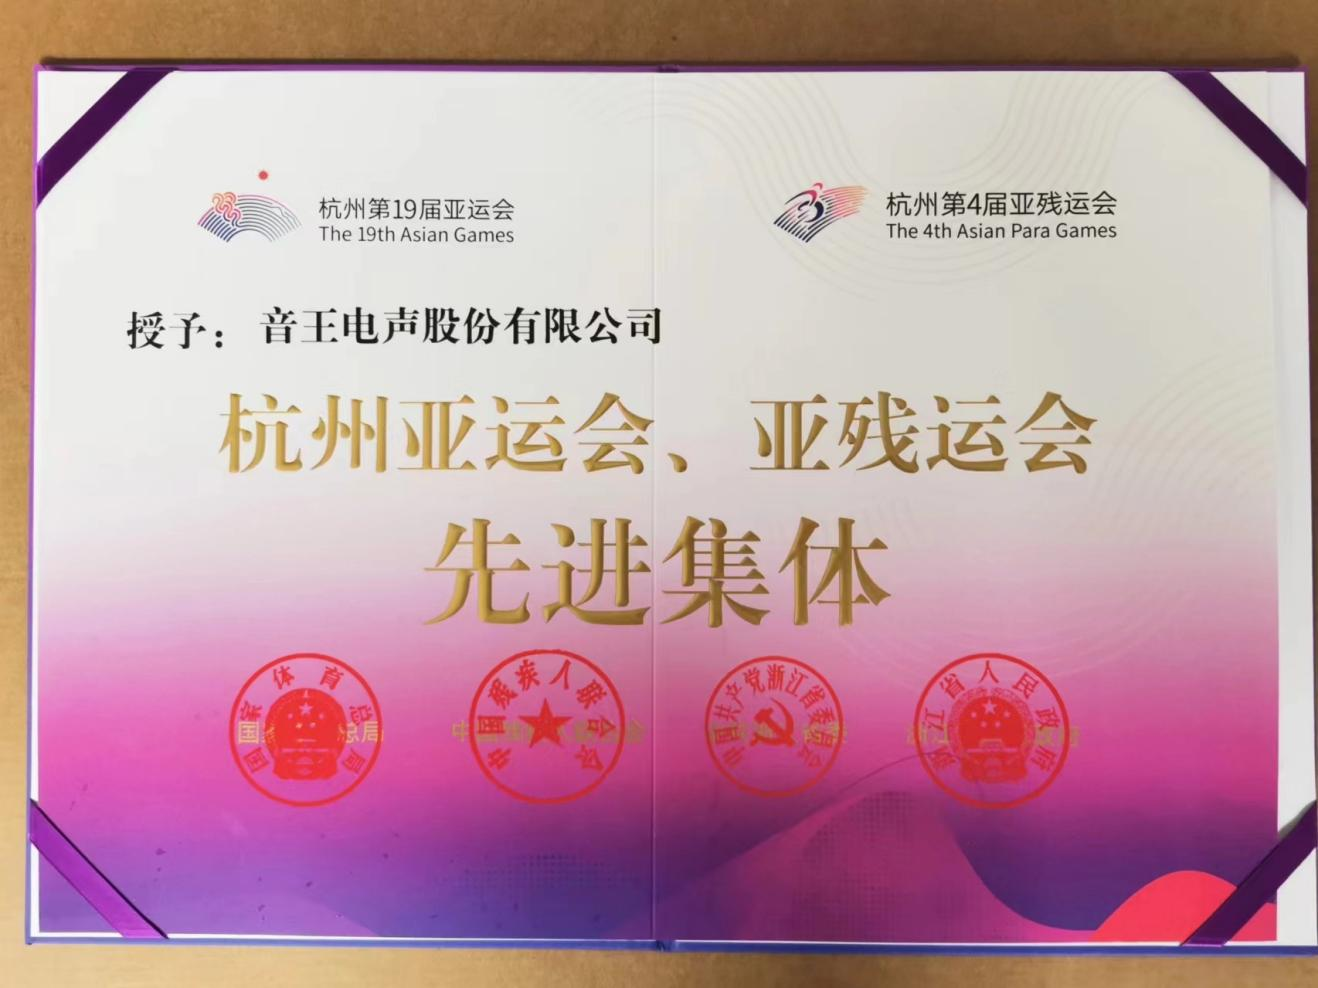 上榜！南宫NG·28集團榮膺「杭州亞運會、亞殘運會先進集體」稱號